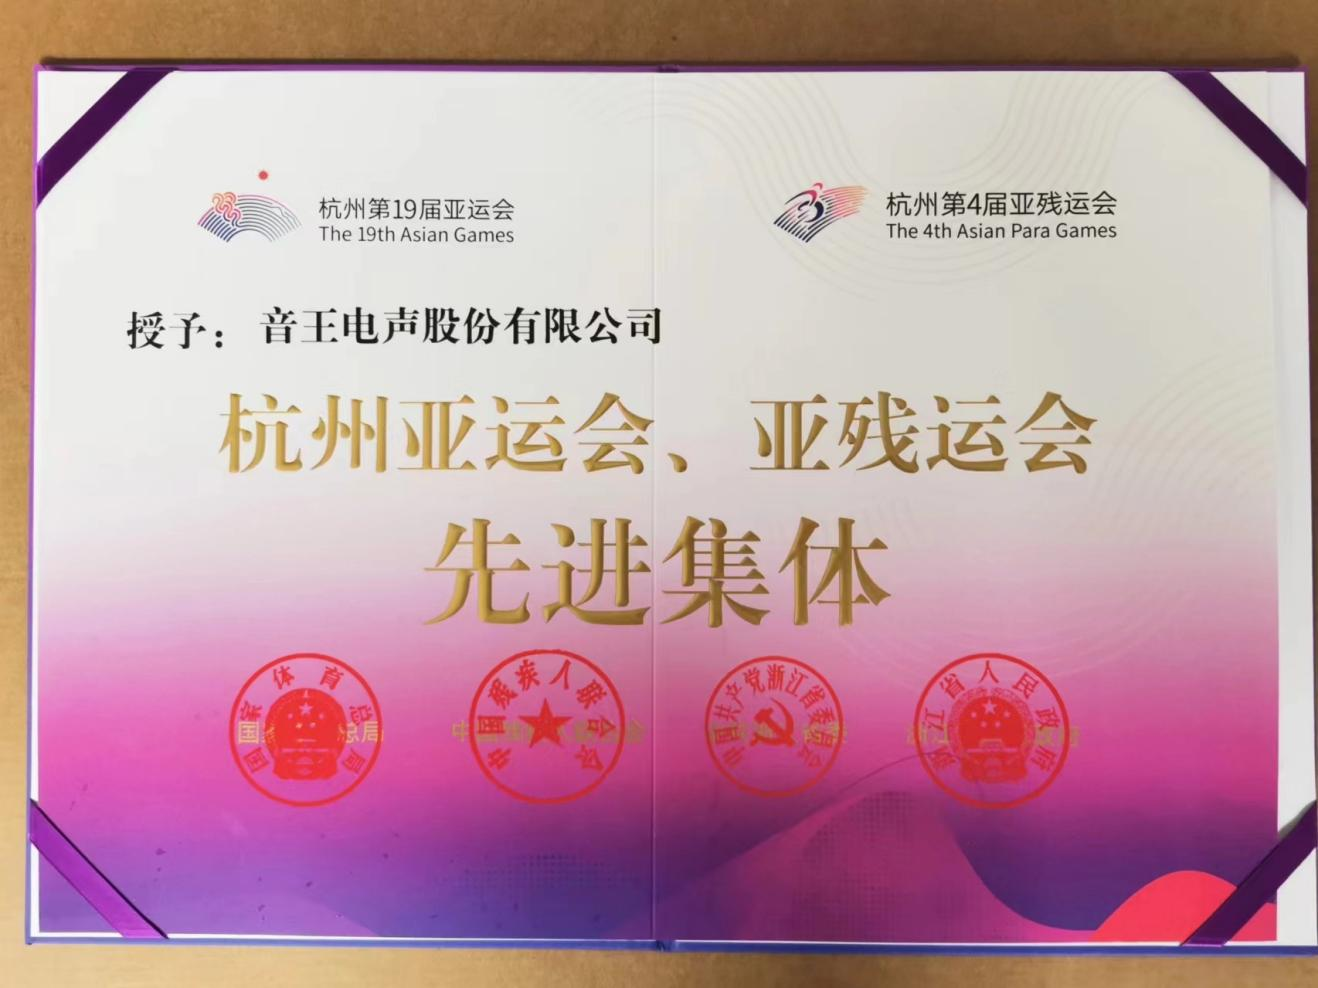 上榜！南宫NG·28集團榮膺「杭州亞運會、亞殘運會先進集體」稱號